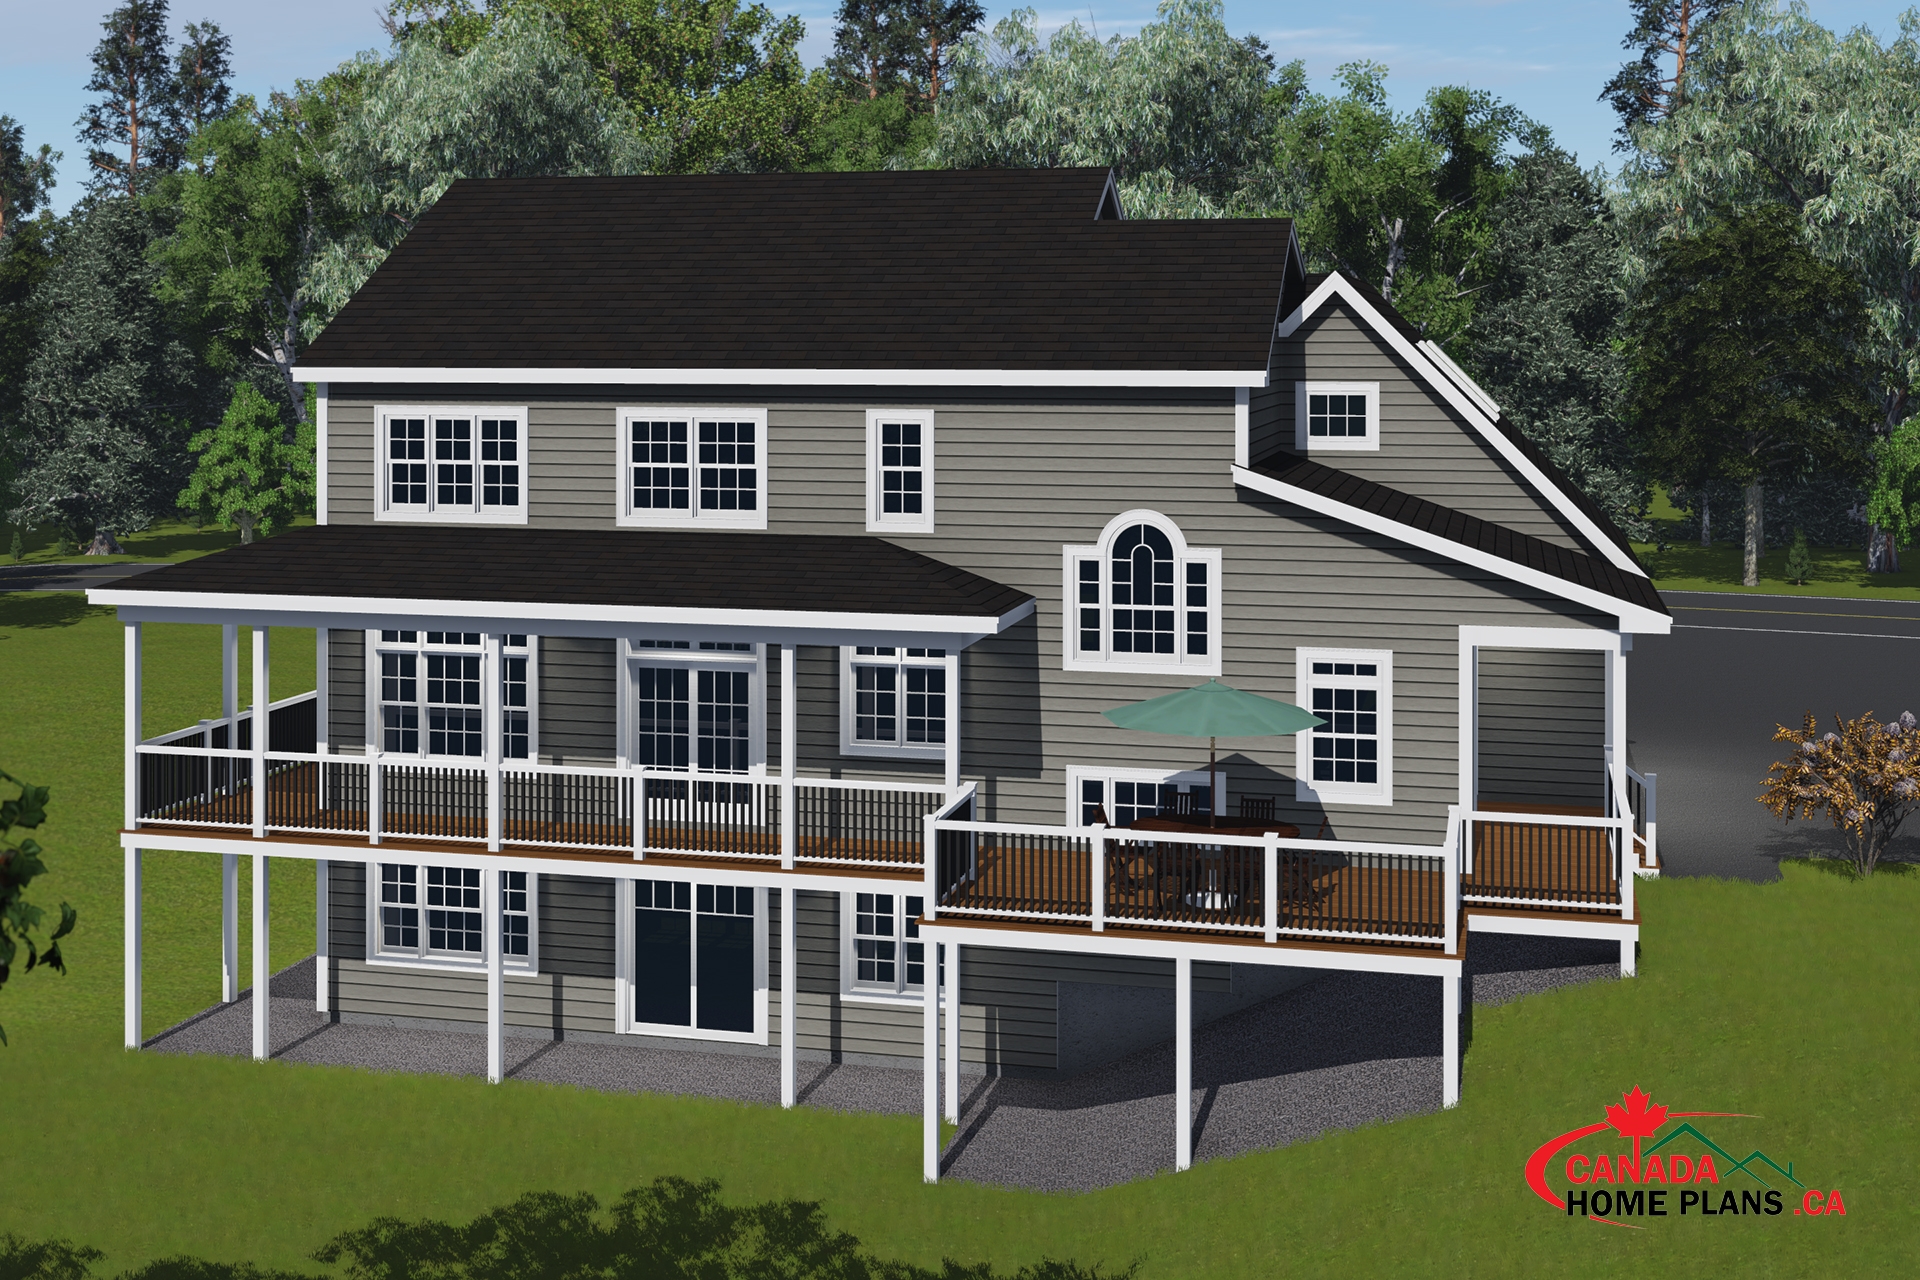 Clairmont - Canada Home Plans